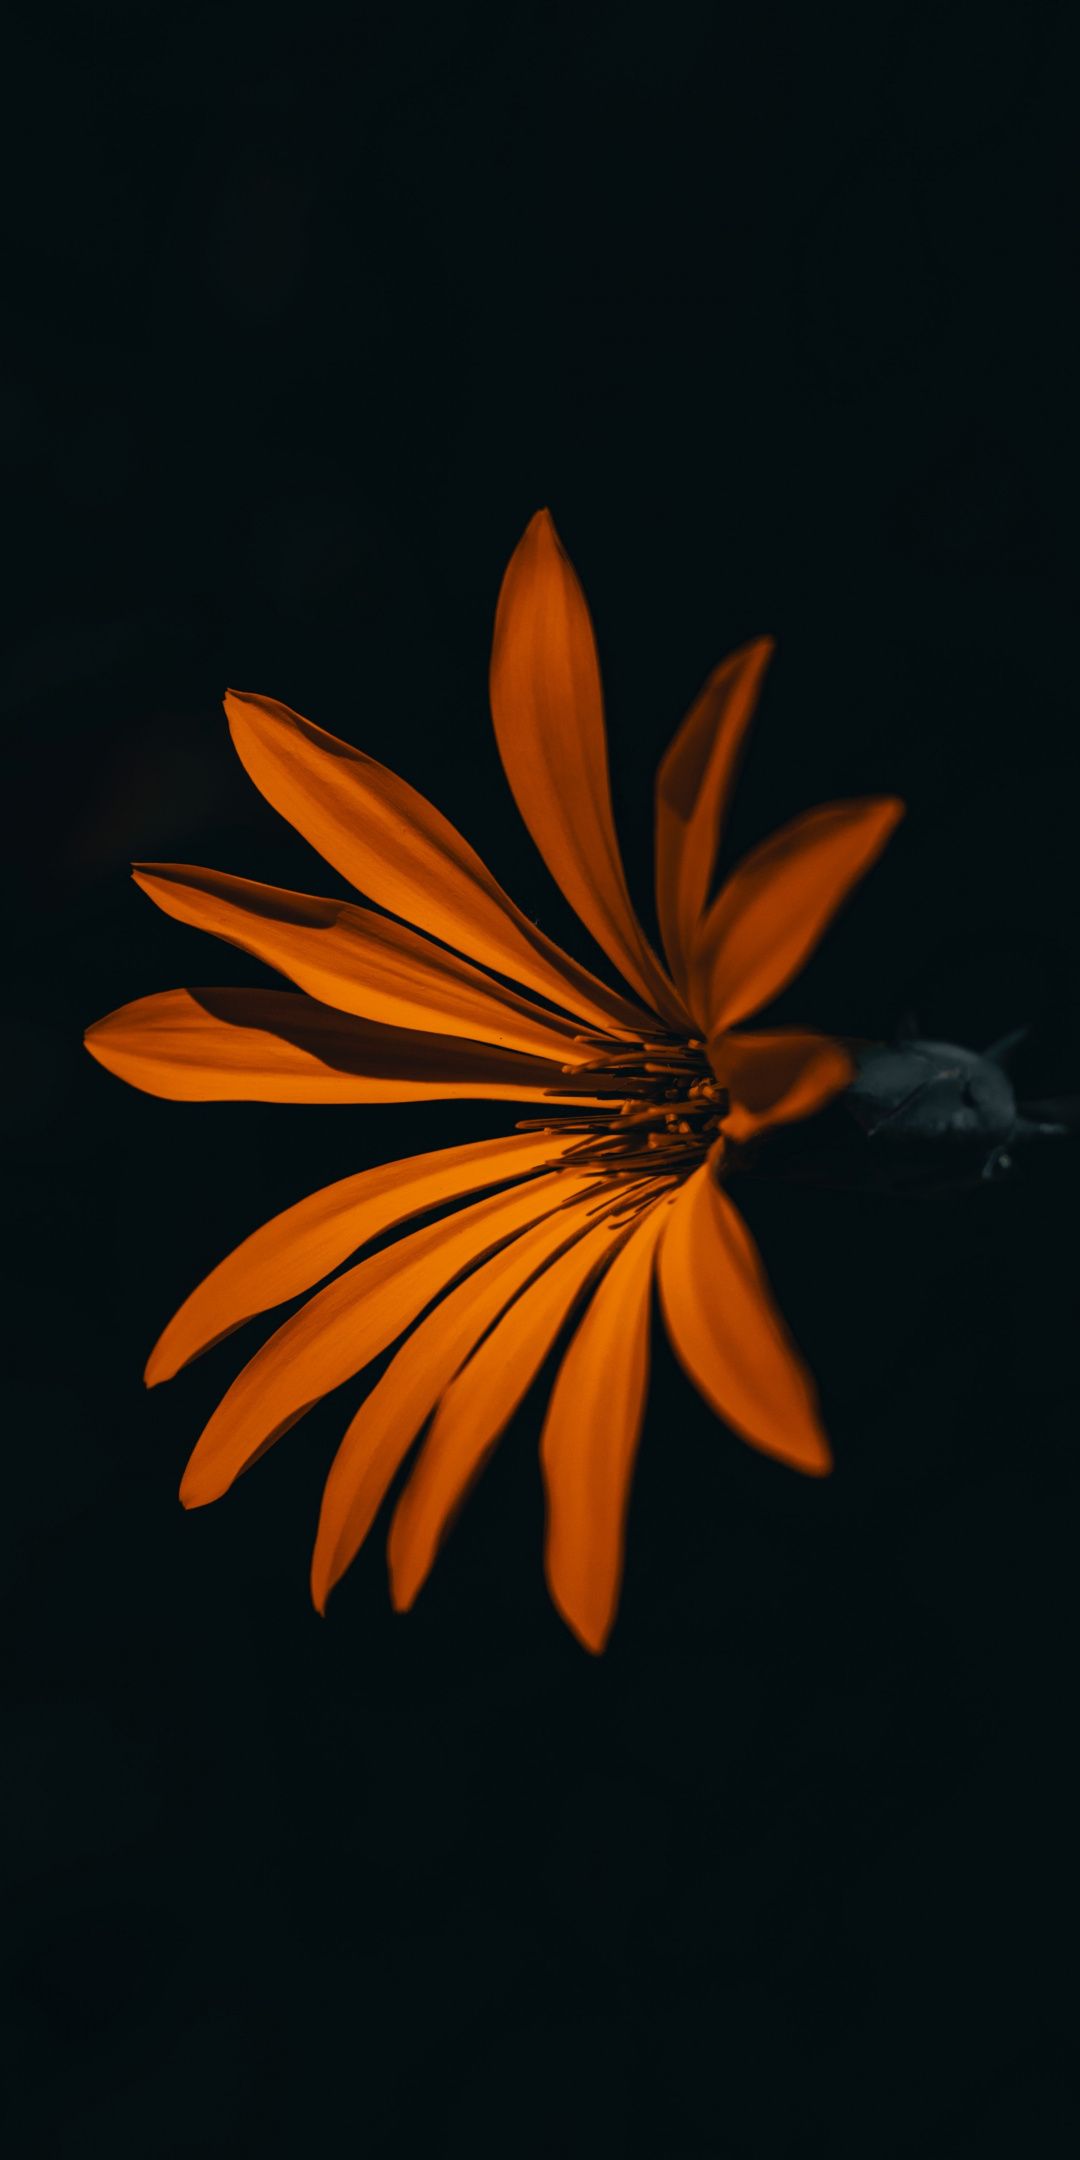 A yellow flower in a dark background - Dark orange